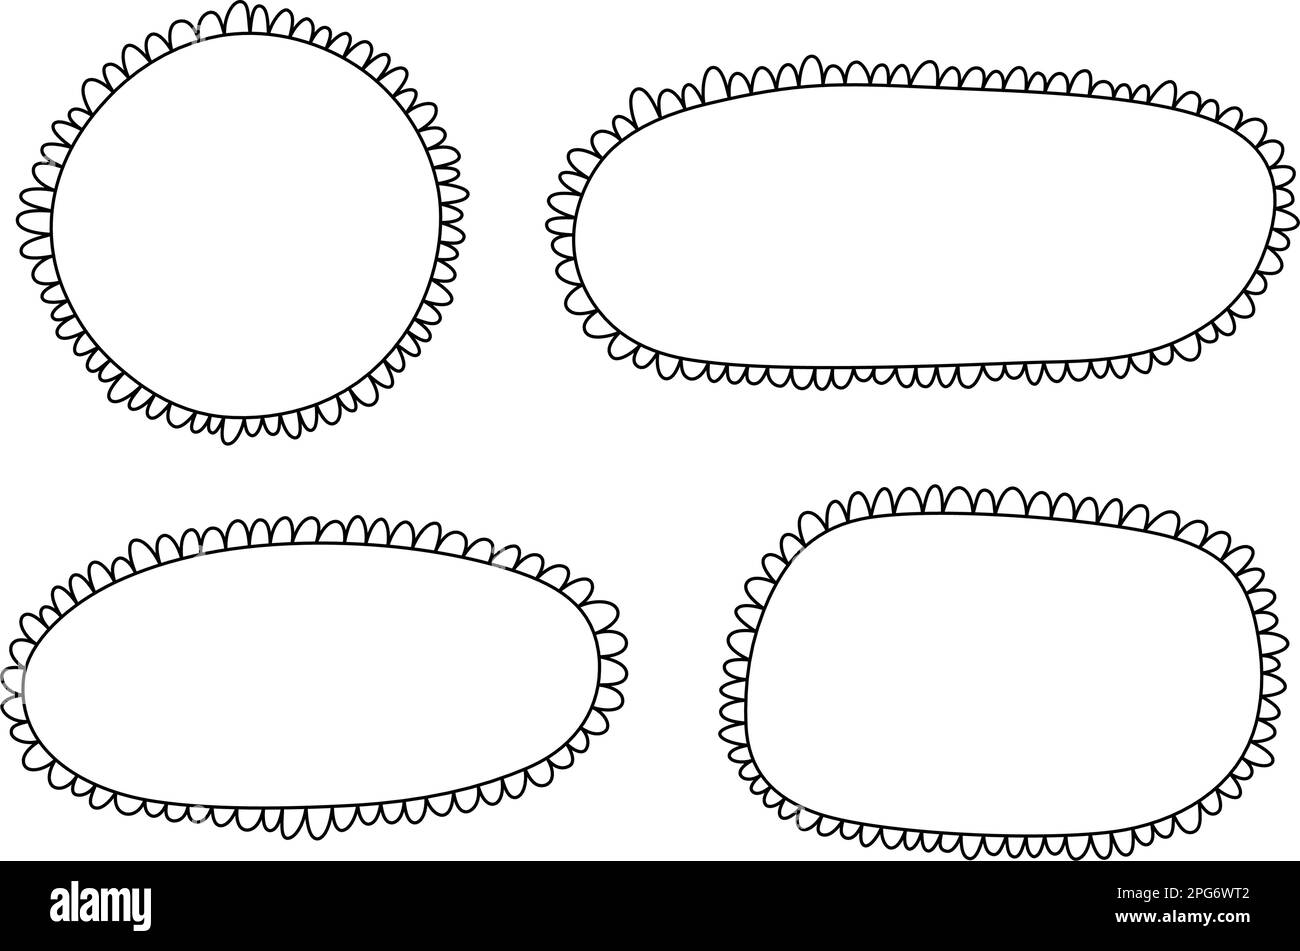 Doodle Circle und quadratische Muschelrahmen. Handgezeichnete Rechteck- und Ellipsenformen mit ausgekrümmten Kanten. Einfaches Etikettenformular. Rahmen aus Blumenspitze Stock Vektor